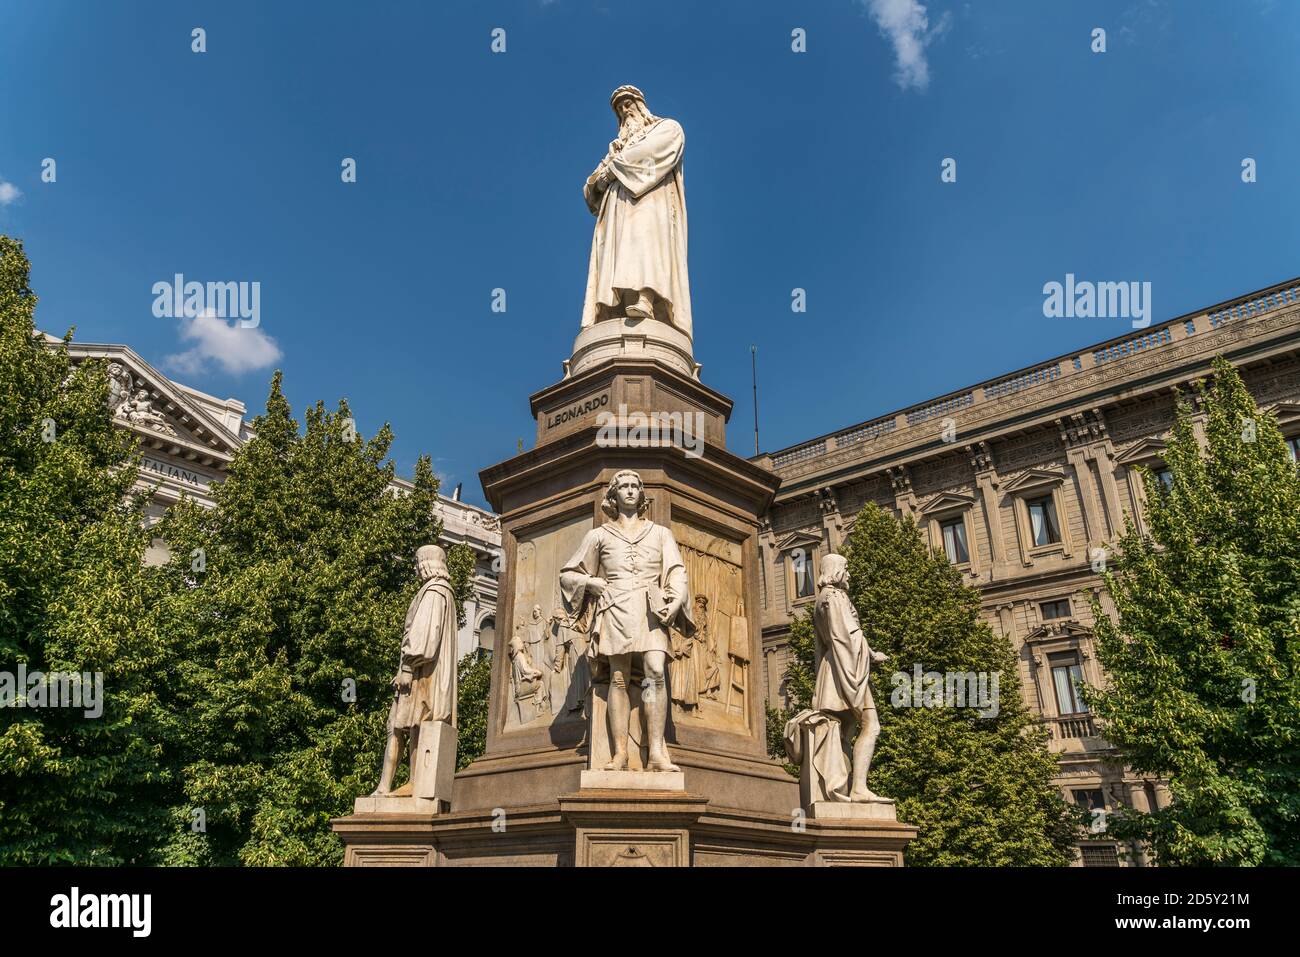 Italy, Milan, monument to Leonardo da Vinci on Piazza della Scala Stock Photo